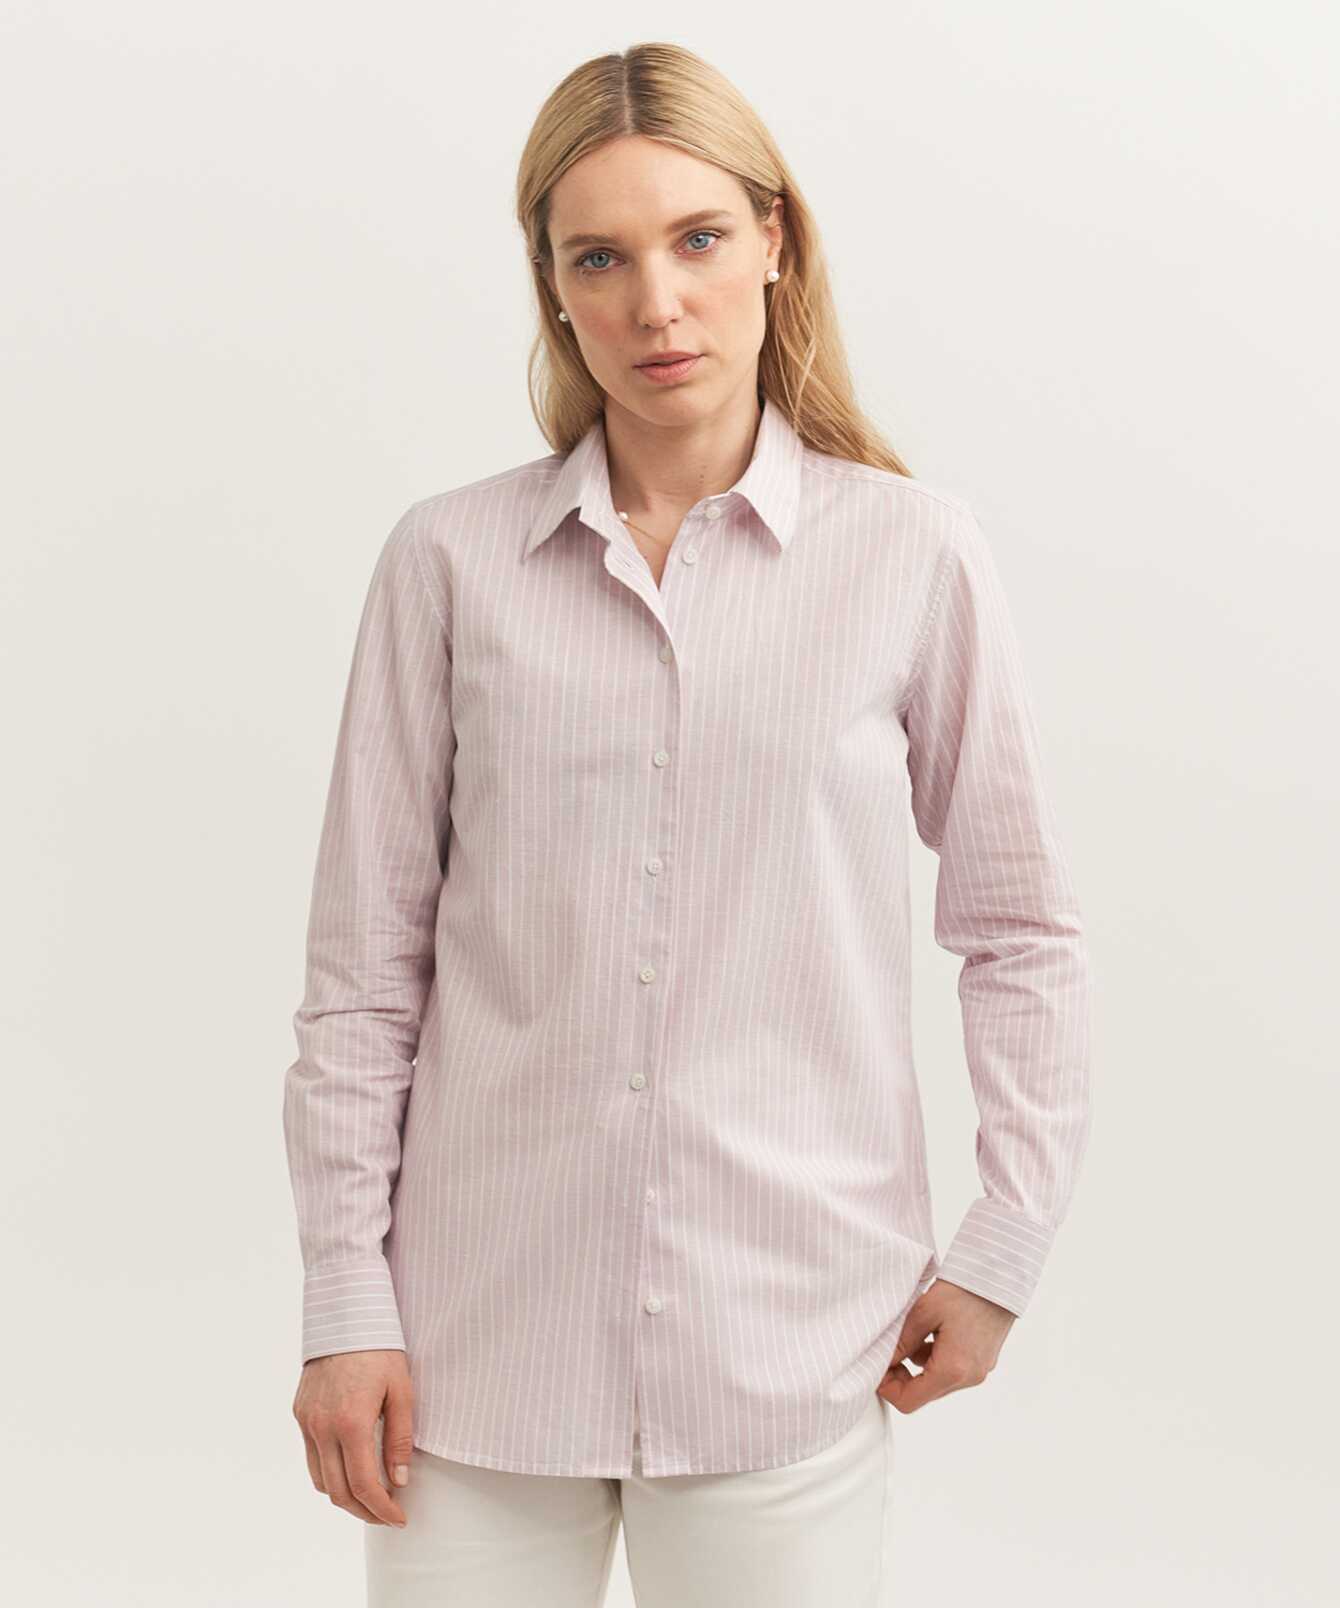 Shirt Mickan Breeze Light Pink Linen shirt The Shirt Factory